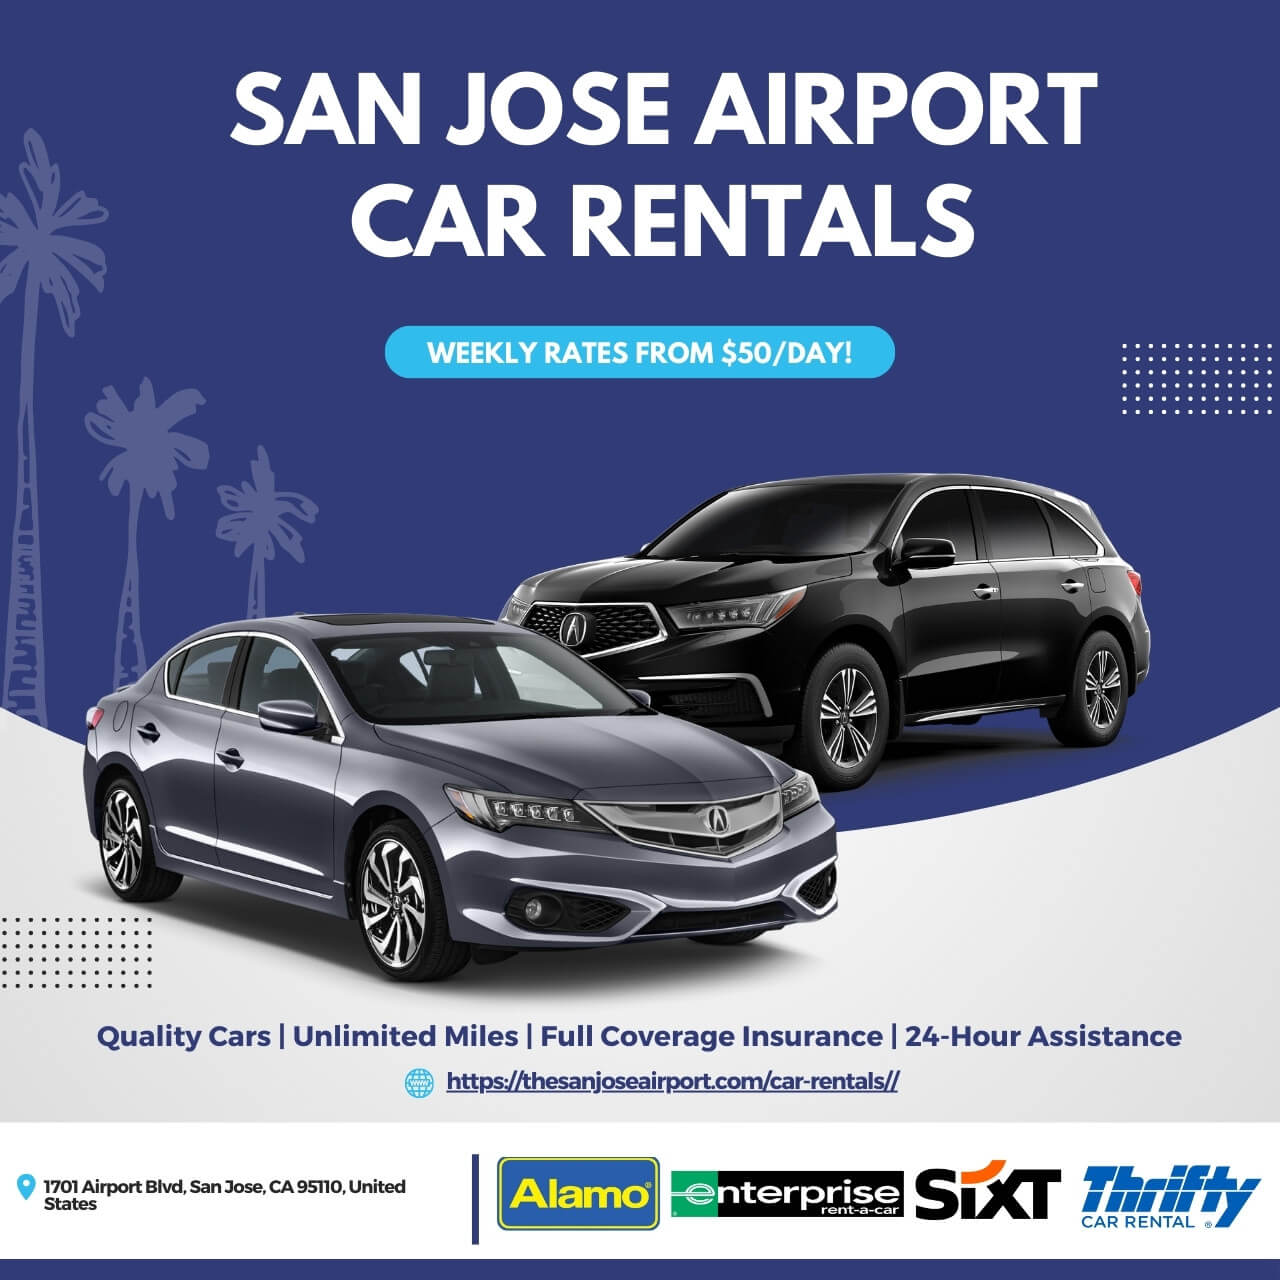 San Jose Airport Car Rentals